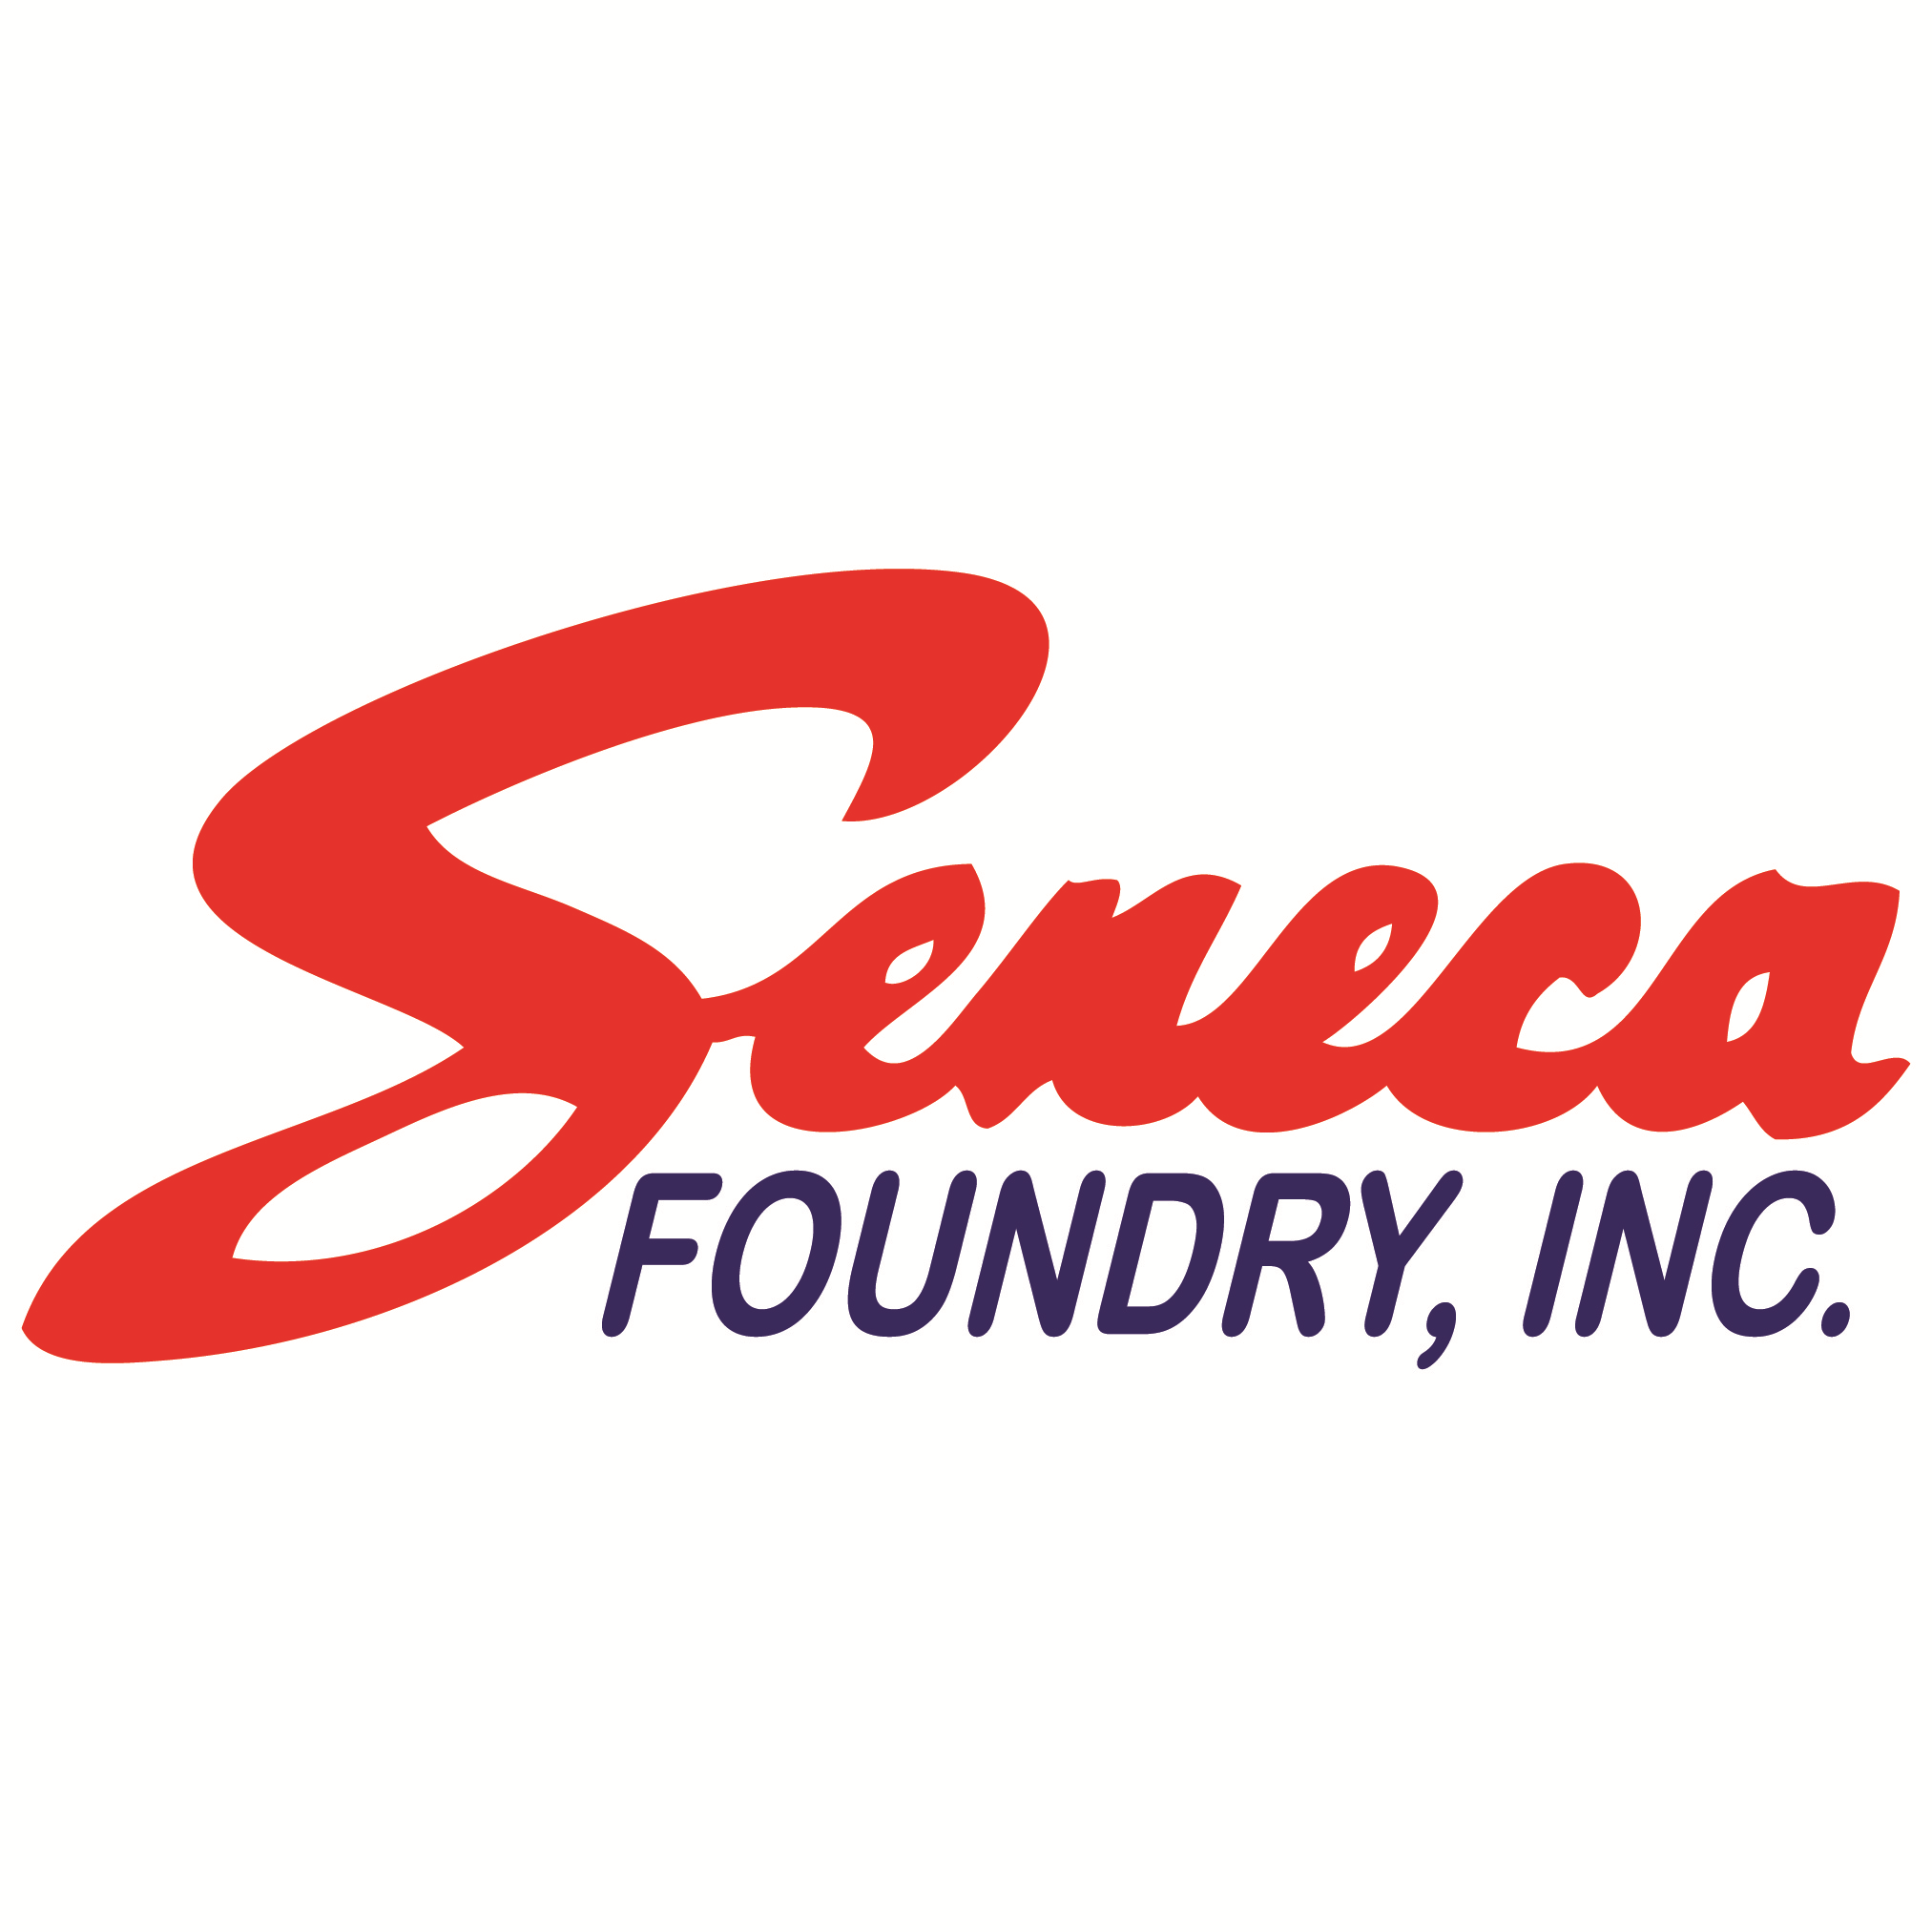 Seneca Foundry, Inc. Company Logo